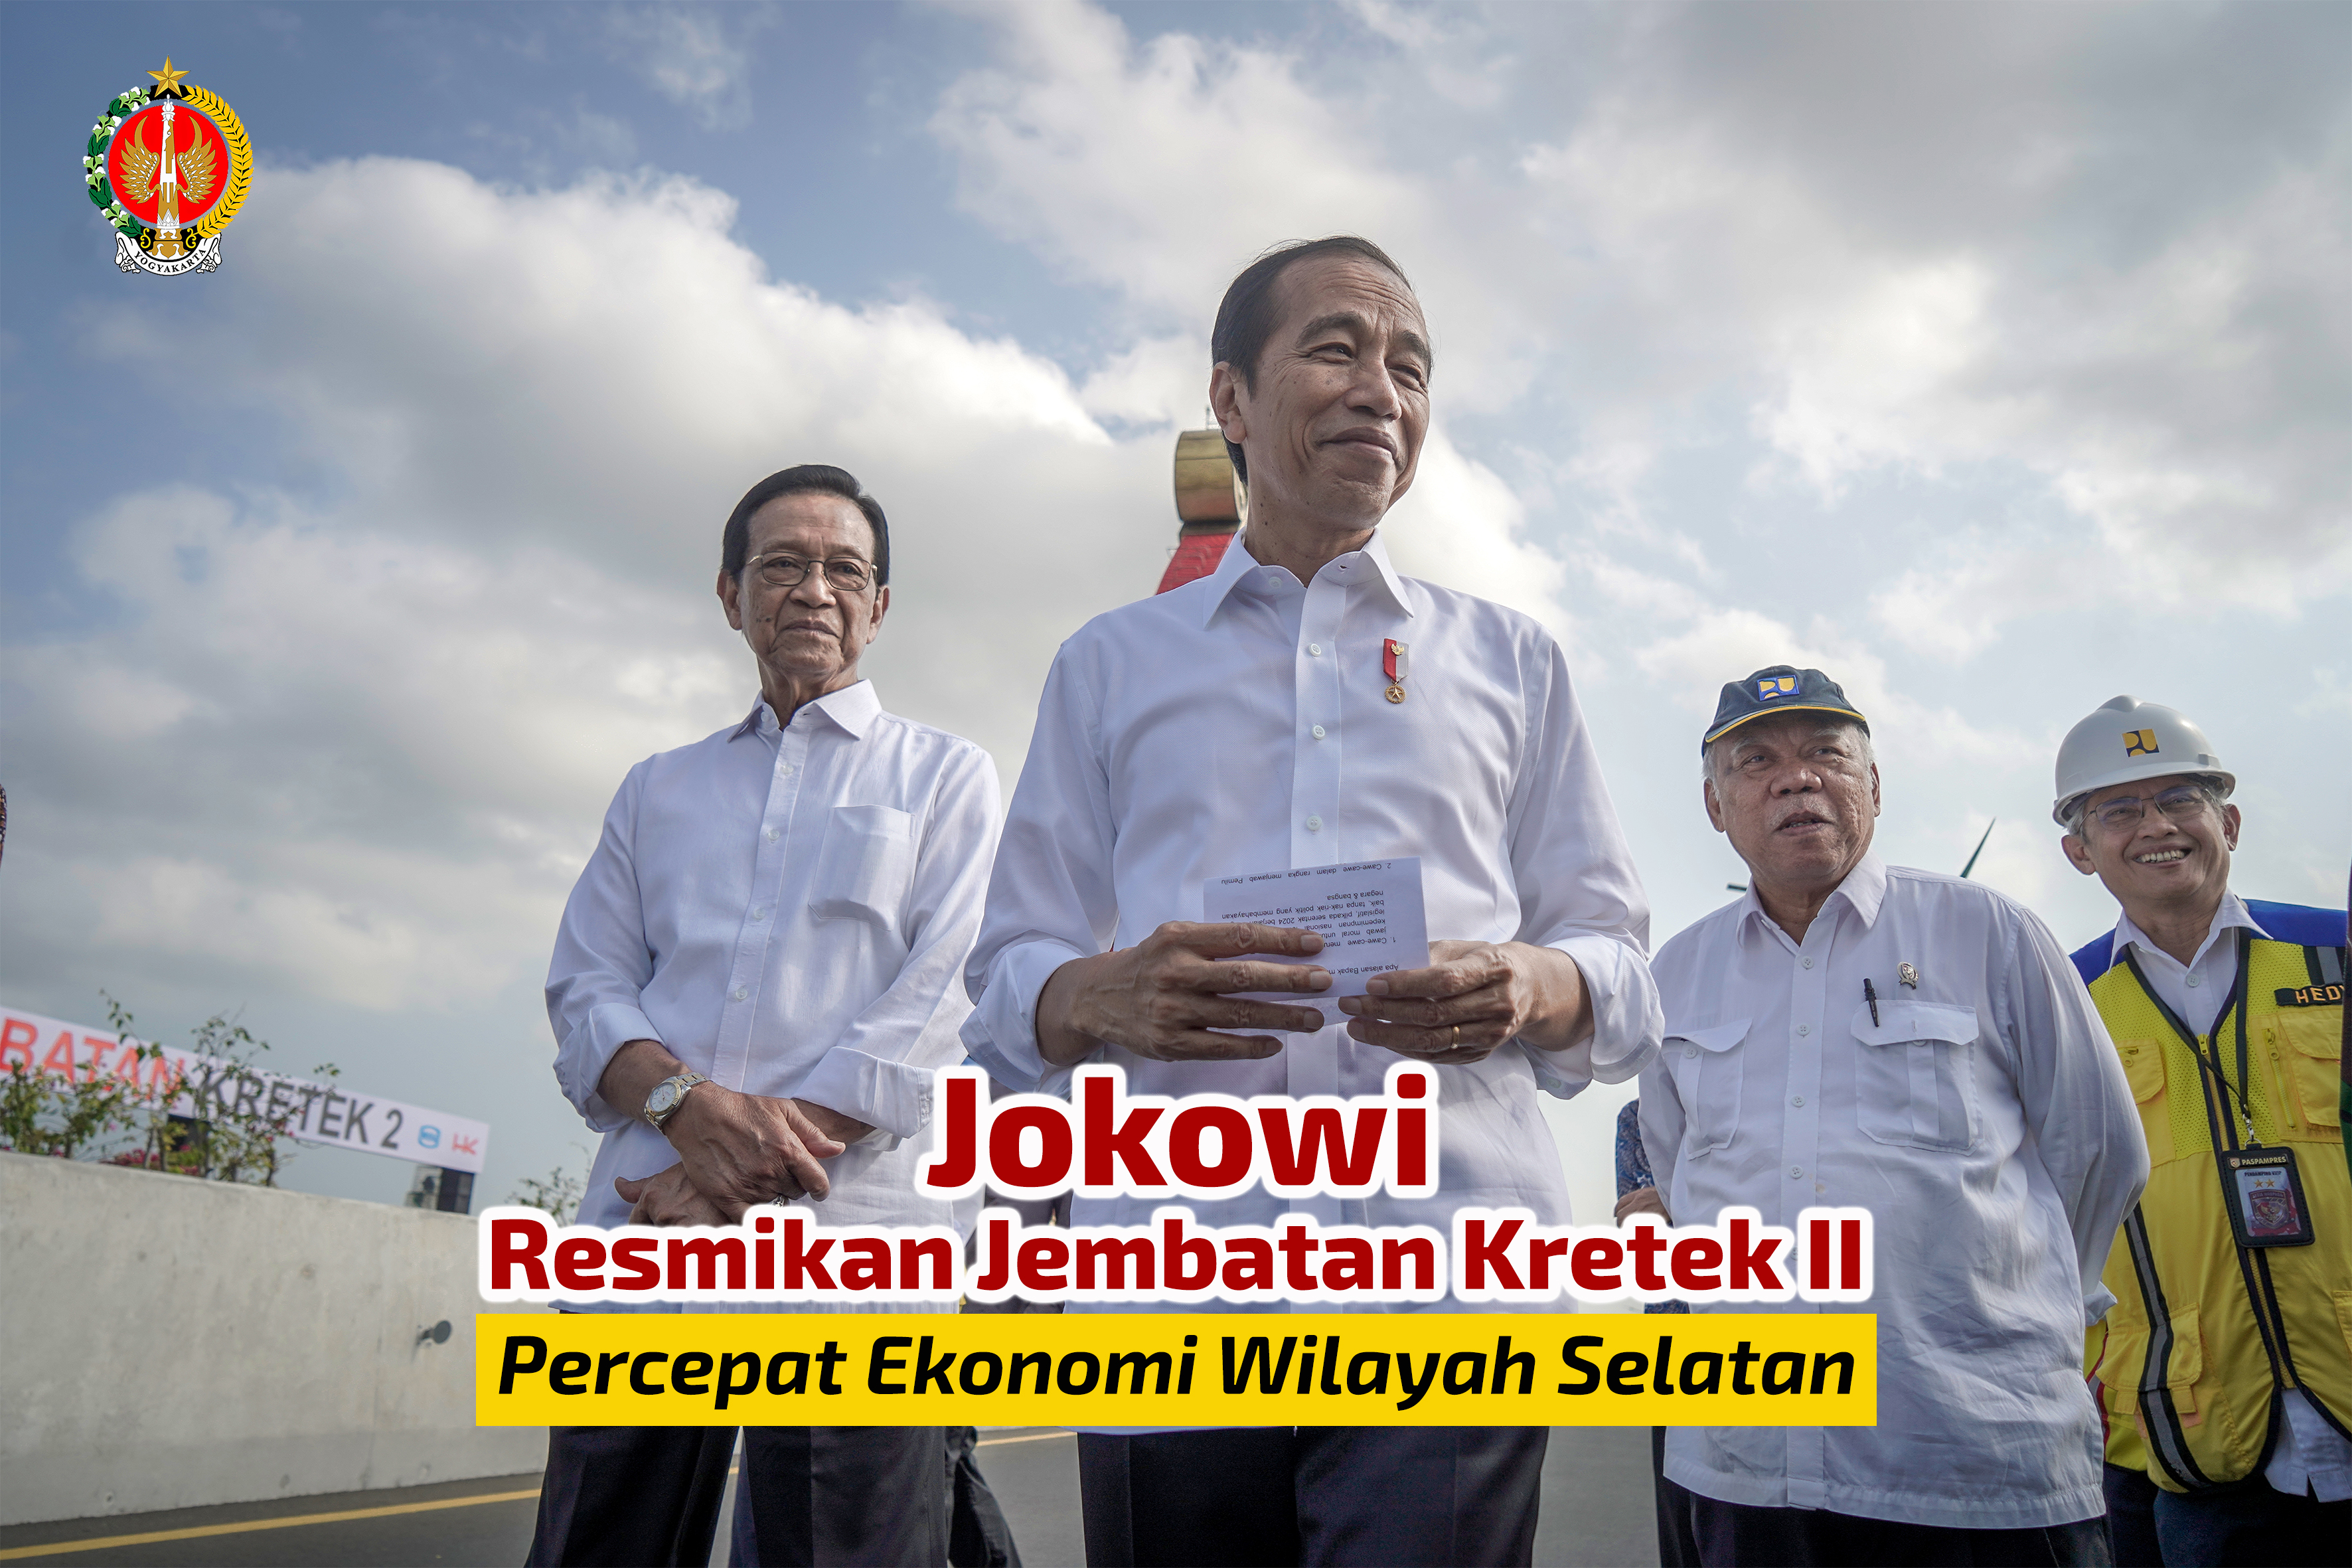 Presiden RI Resmikan Jembatan Kretek II, Percepat Ekonomi Wilayah Selatan